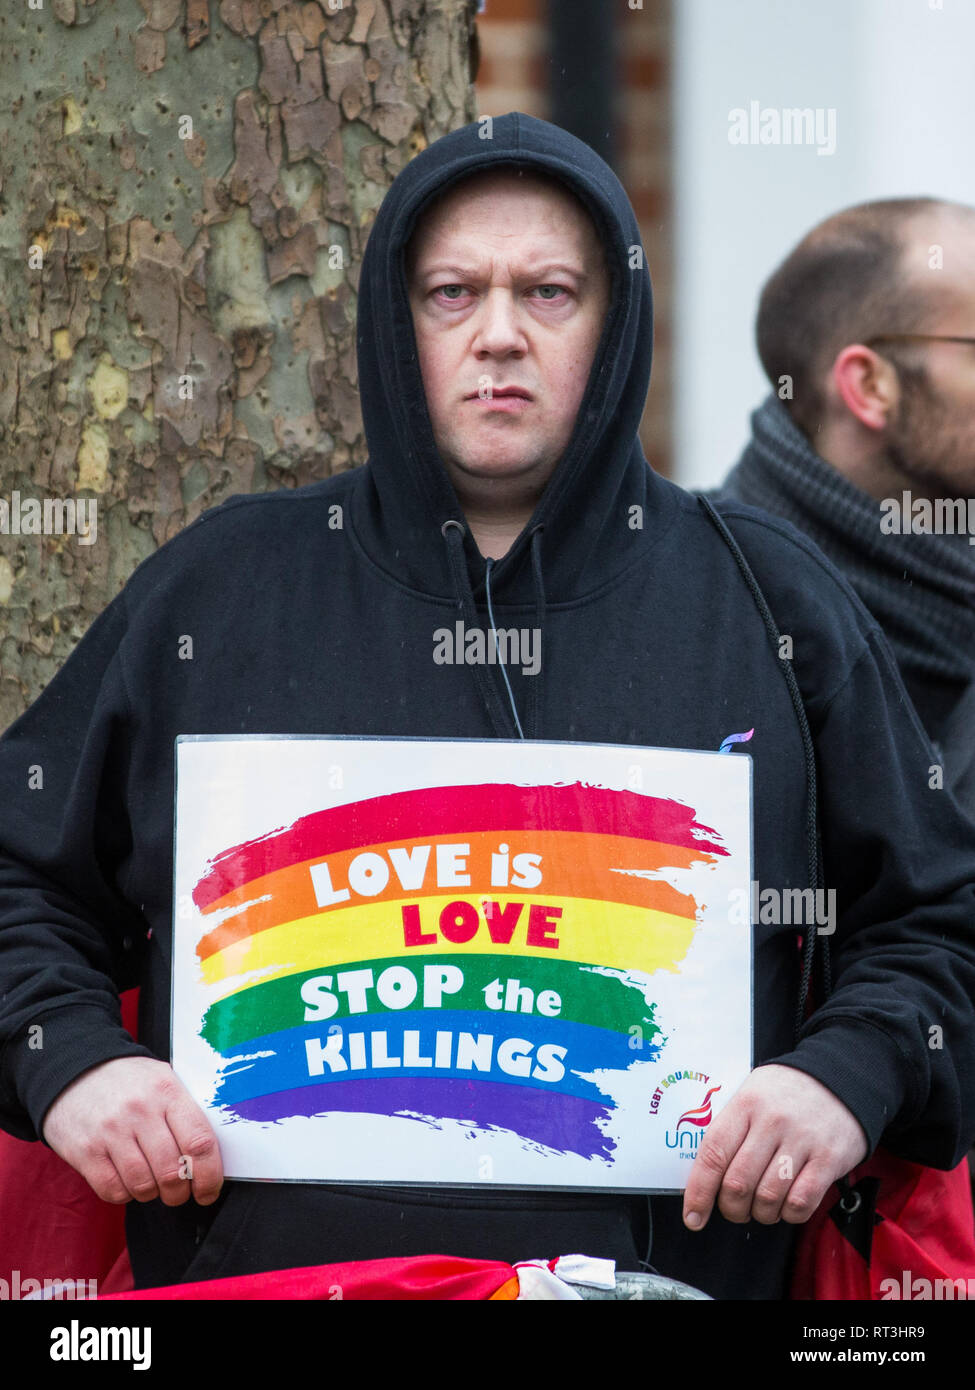 Die Leute vom Londoner LGBT + Gemeinschaften, verbunden von Peter Tatchell, Protest außerhalb der Russischen Botschaft in London gegen anti-gay Säuberungen in der Tschetschenischen Republik, ein Teil der Russischen Föderation Mit: Atmosphäre, Wo: London, Vereinigtes Königreich, wenn: 27 Jan 2019 Credit: Wheatley/WANN Stockfoto